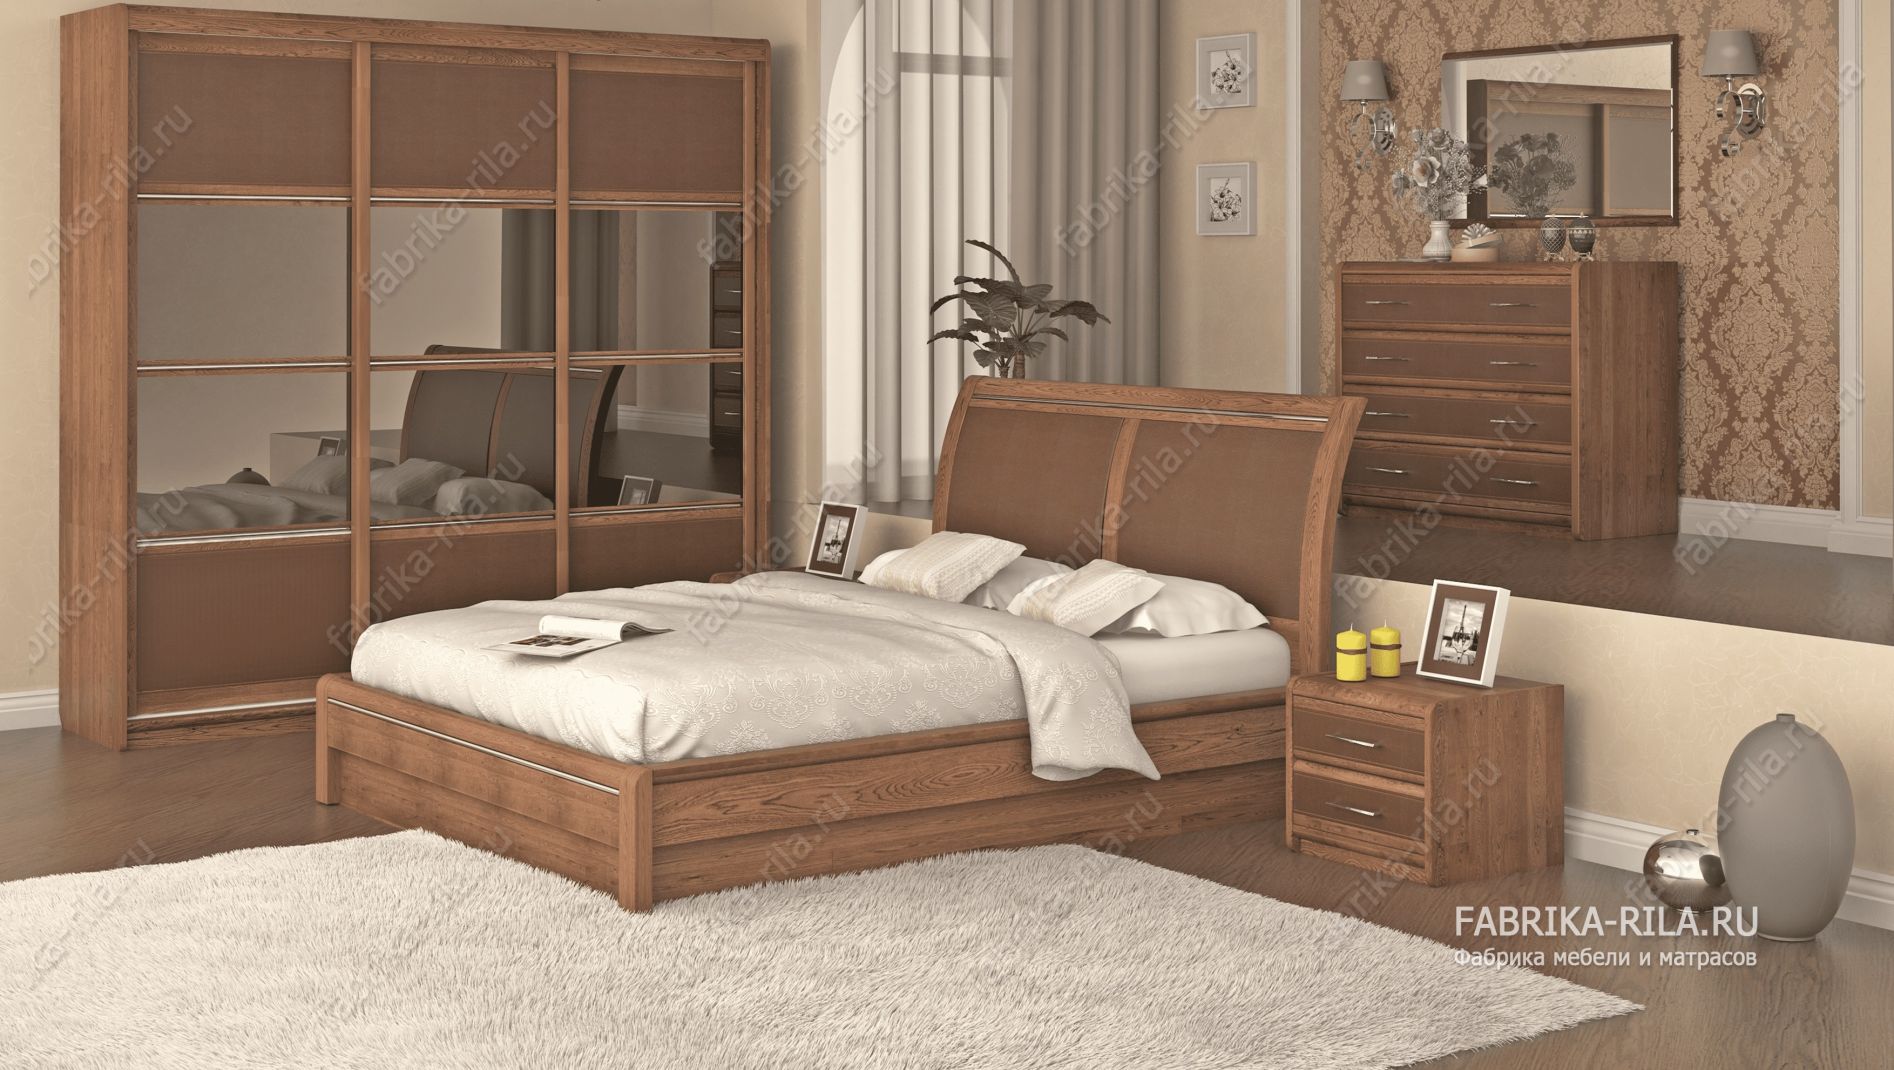 кровать Okaeri 6 см— 90x190 см. из сосны